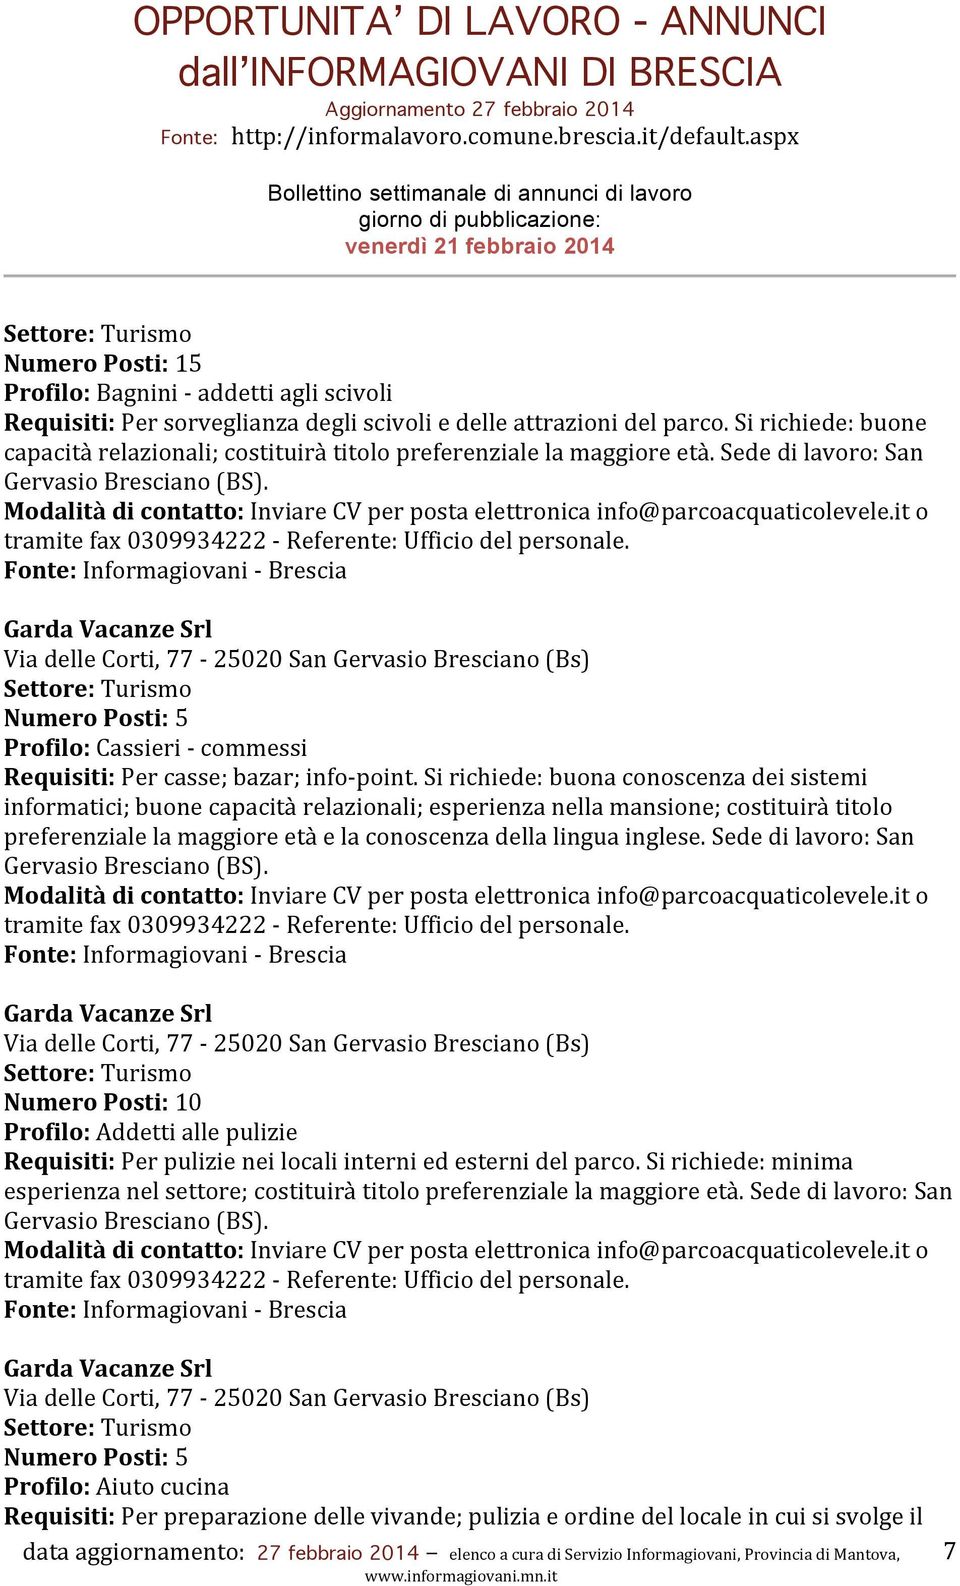 Garda Vacanze Srl Via delle Corti, 77-25020 San Gervasio Bresciano (Bs) Settore: Turismo Numero Posti: 5 Profilo: Cassieri - commessi Requisiti: Per casse; bazar; info- point.